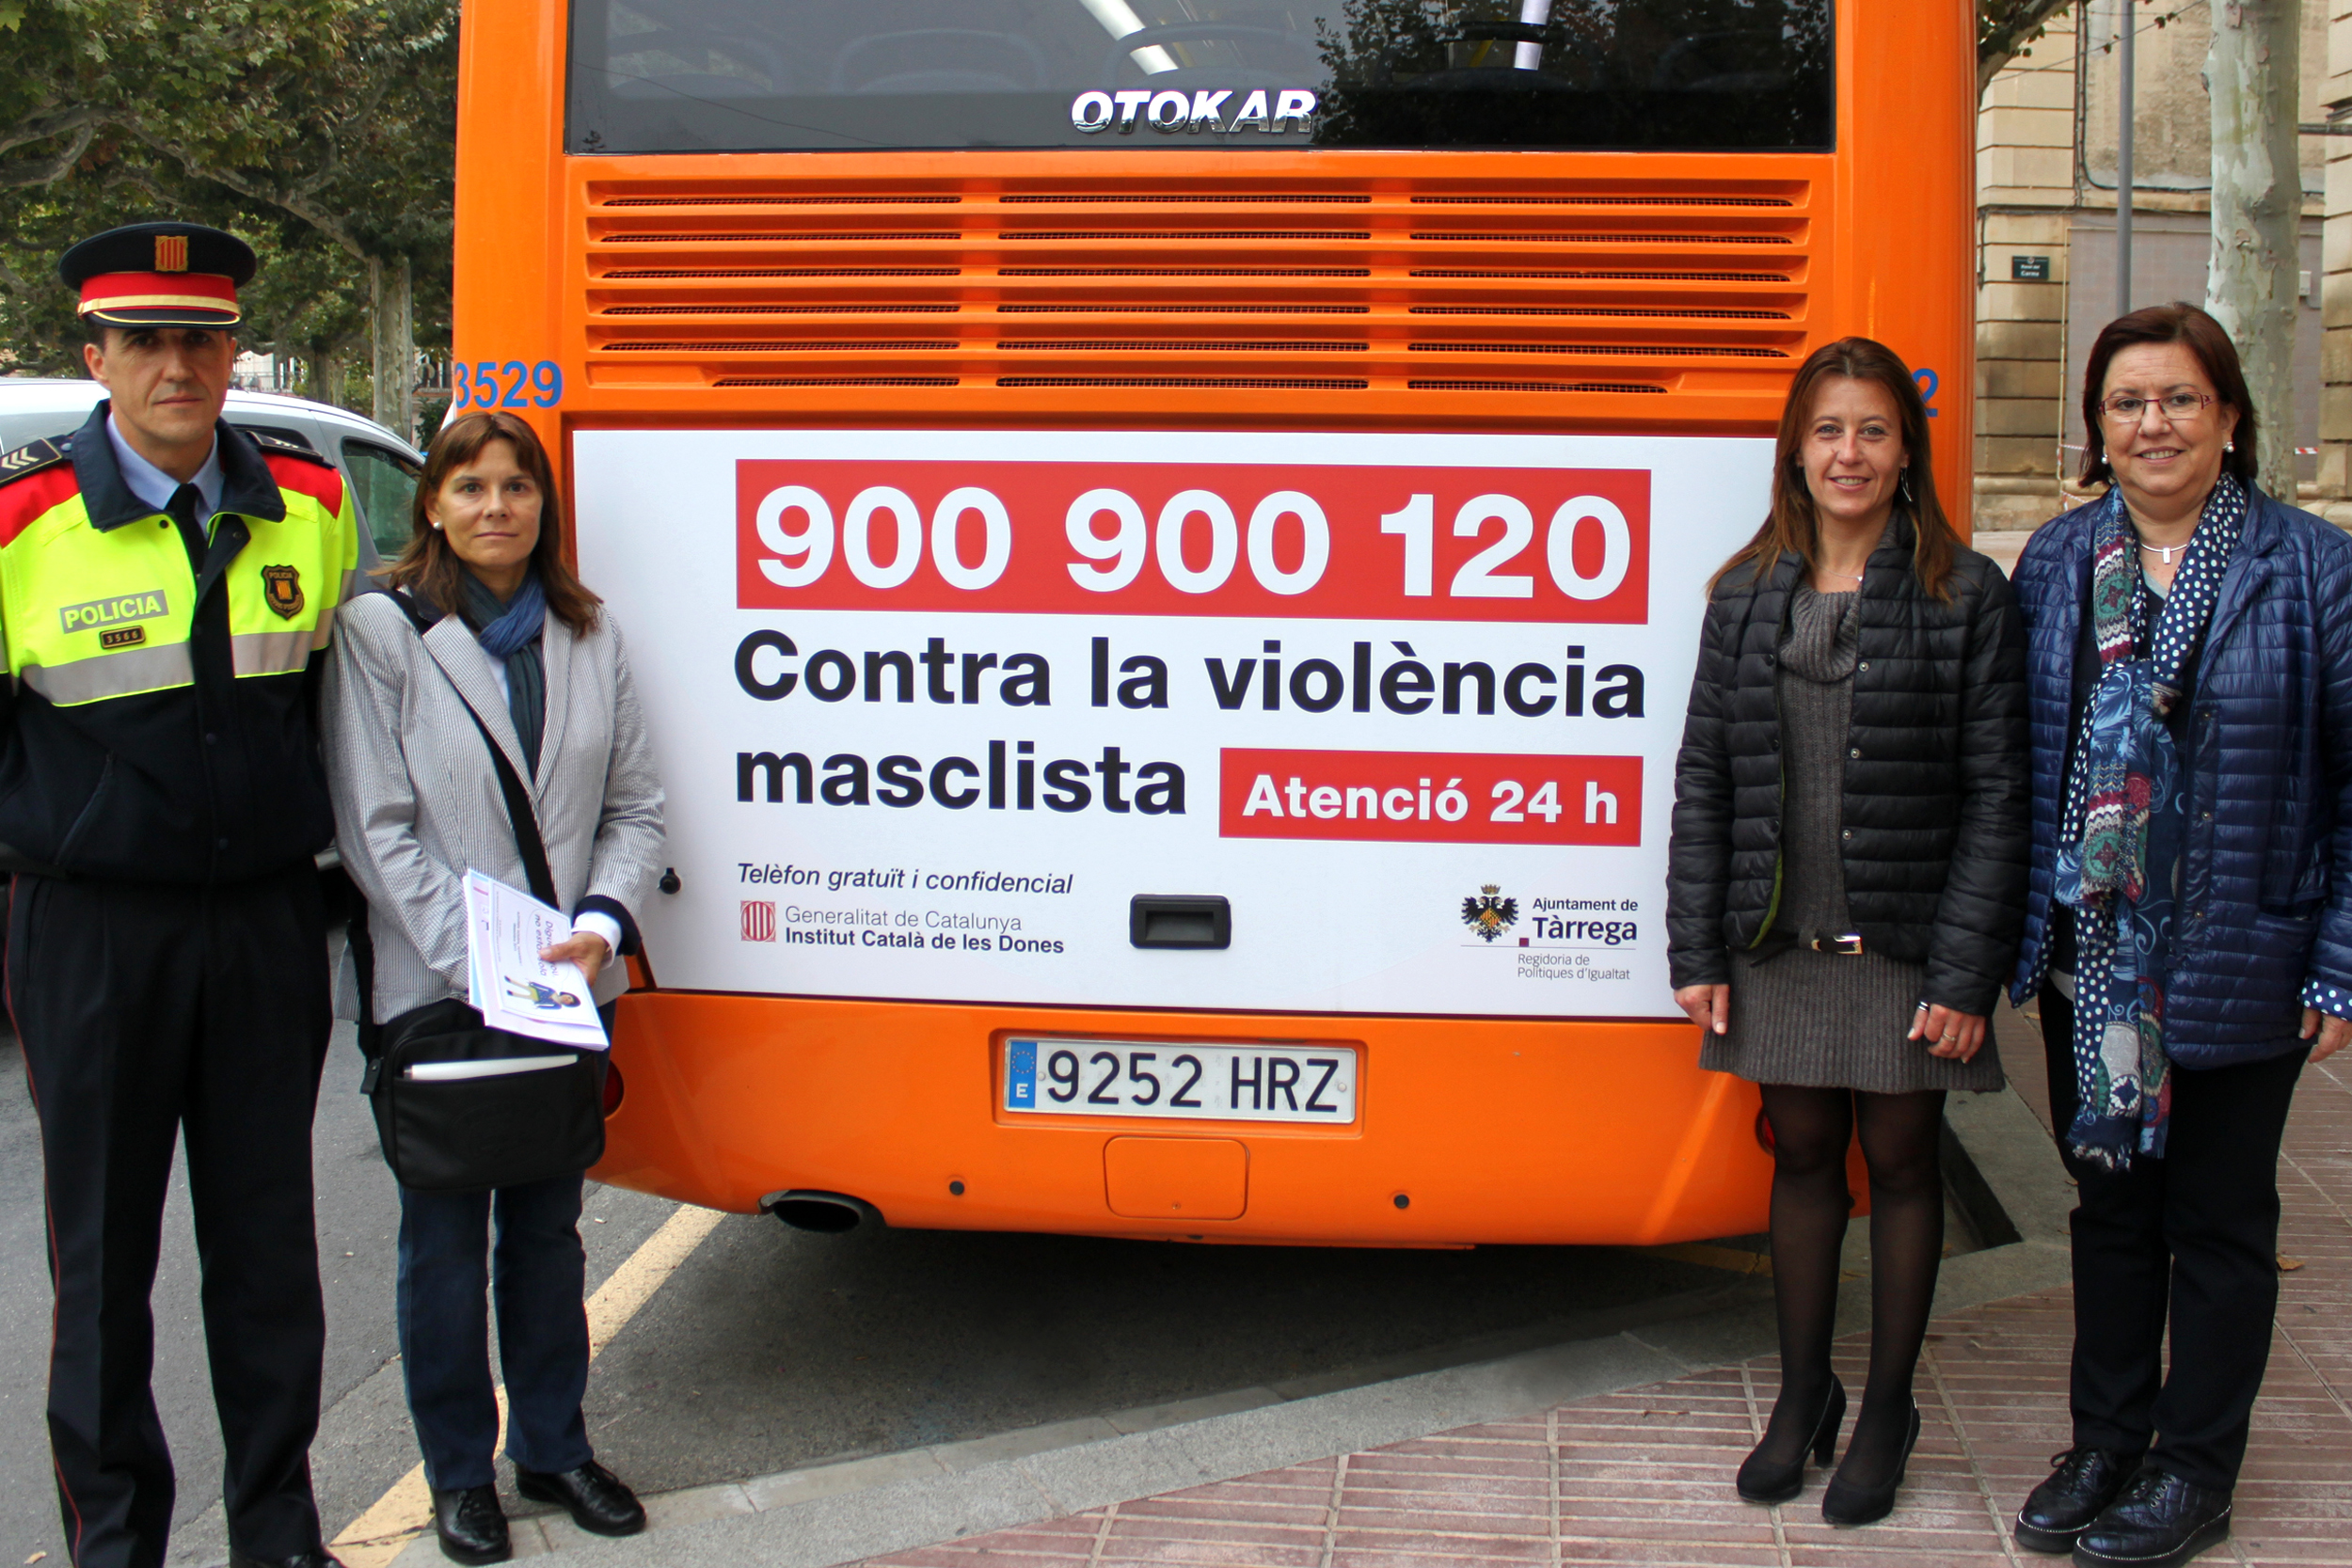 Anunci al bus urbà municipal de Tàrrega per promoure el telèfon d’atenció a les víctimes de violència masclista